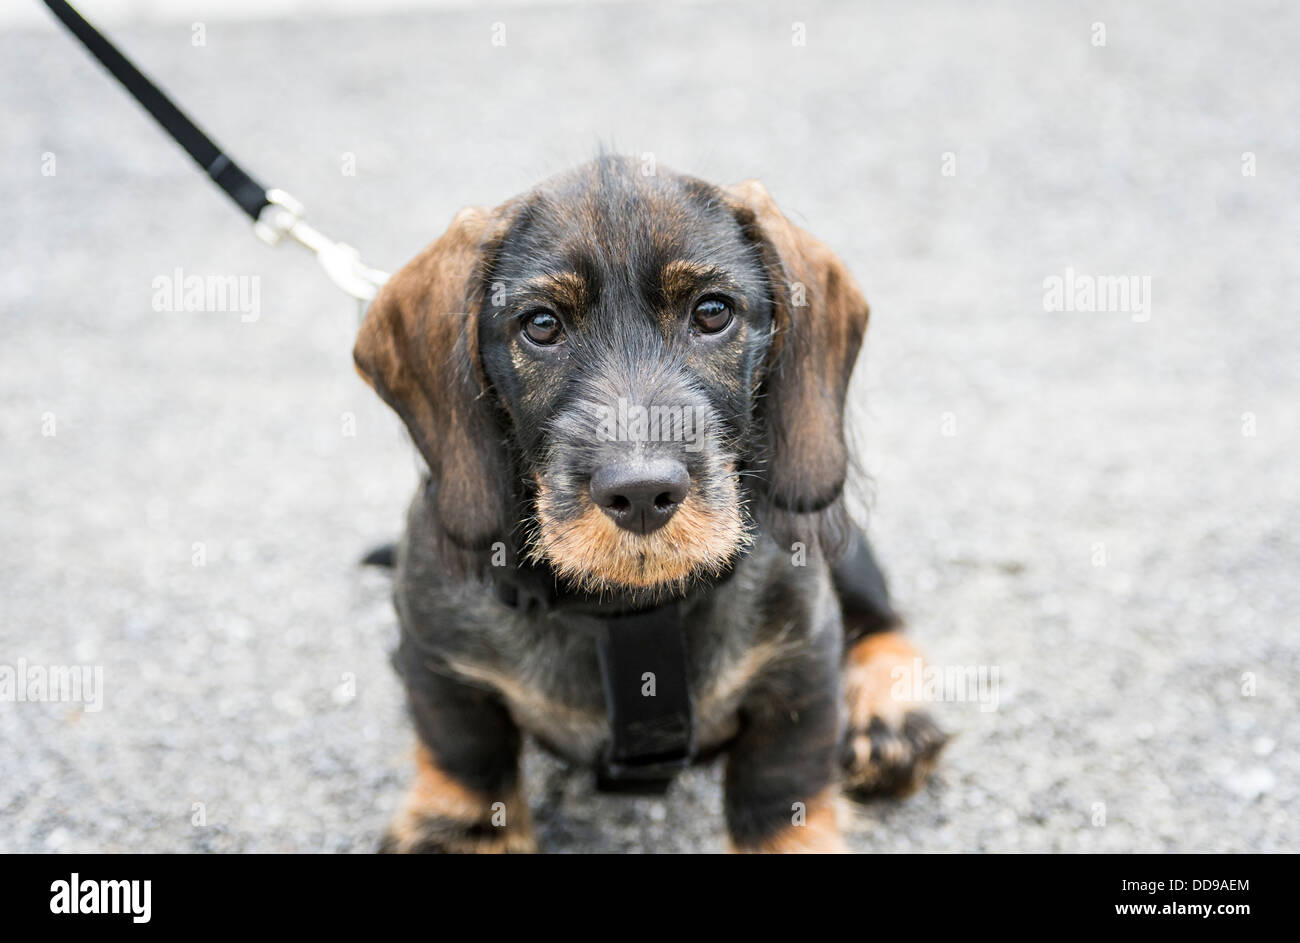 Dachshund Puppy Dog Stock Photo